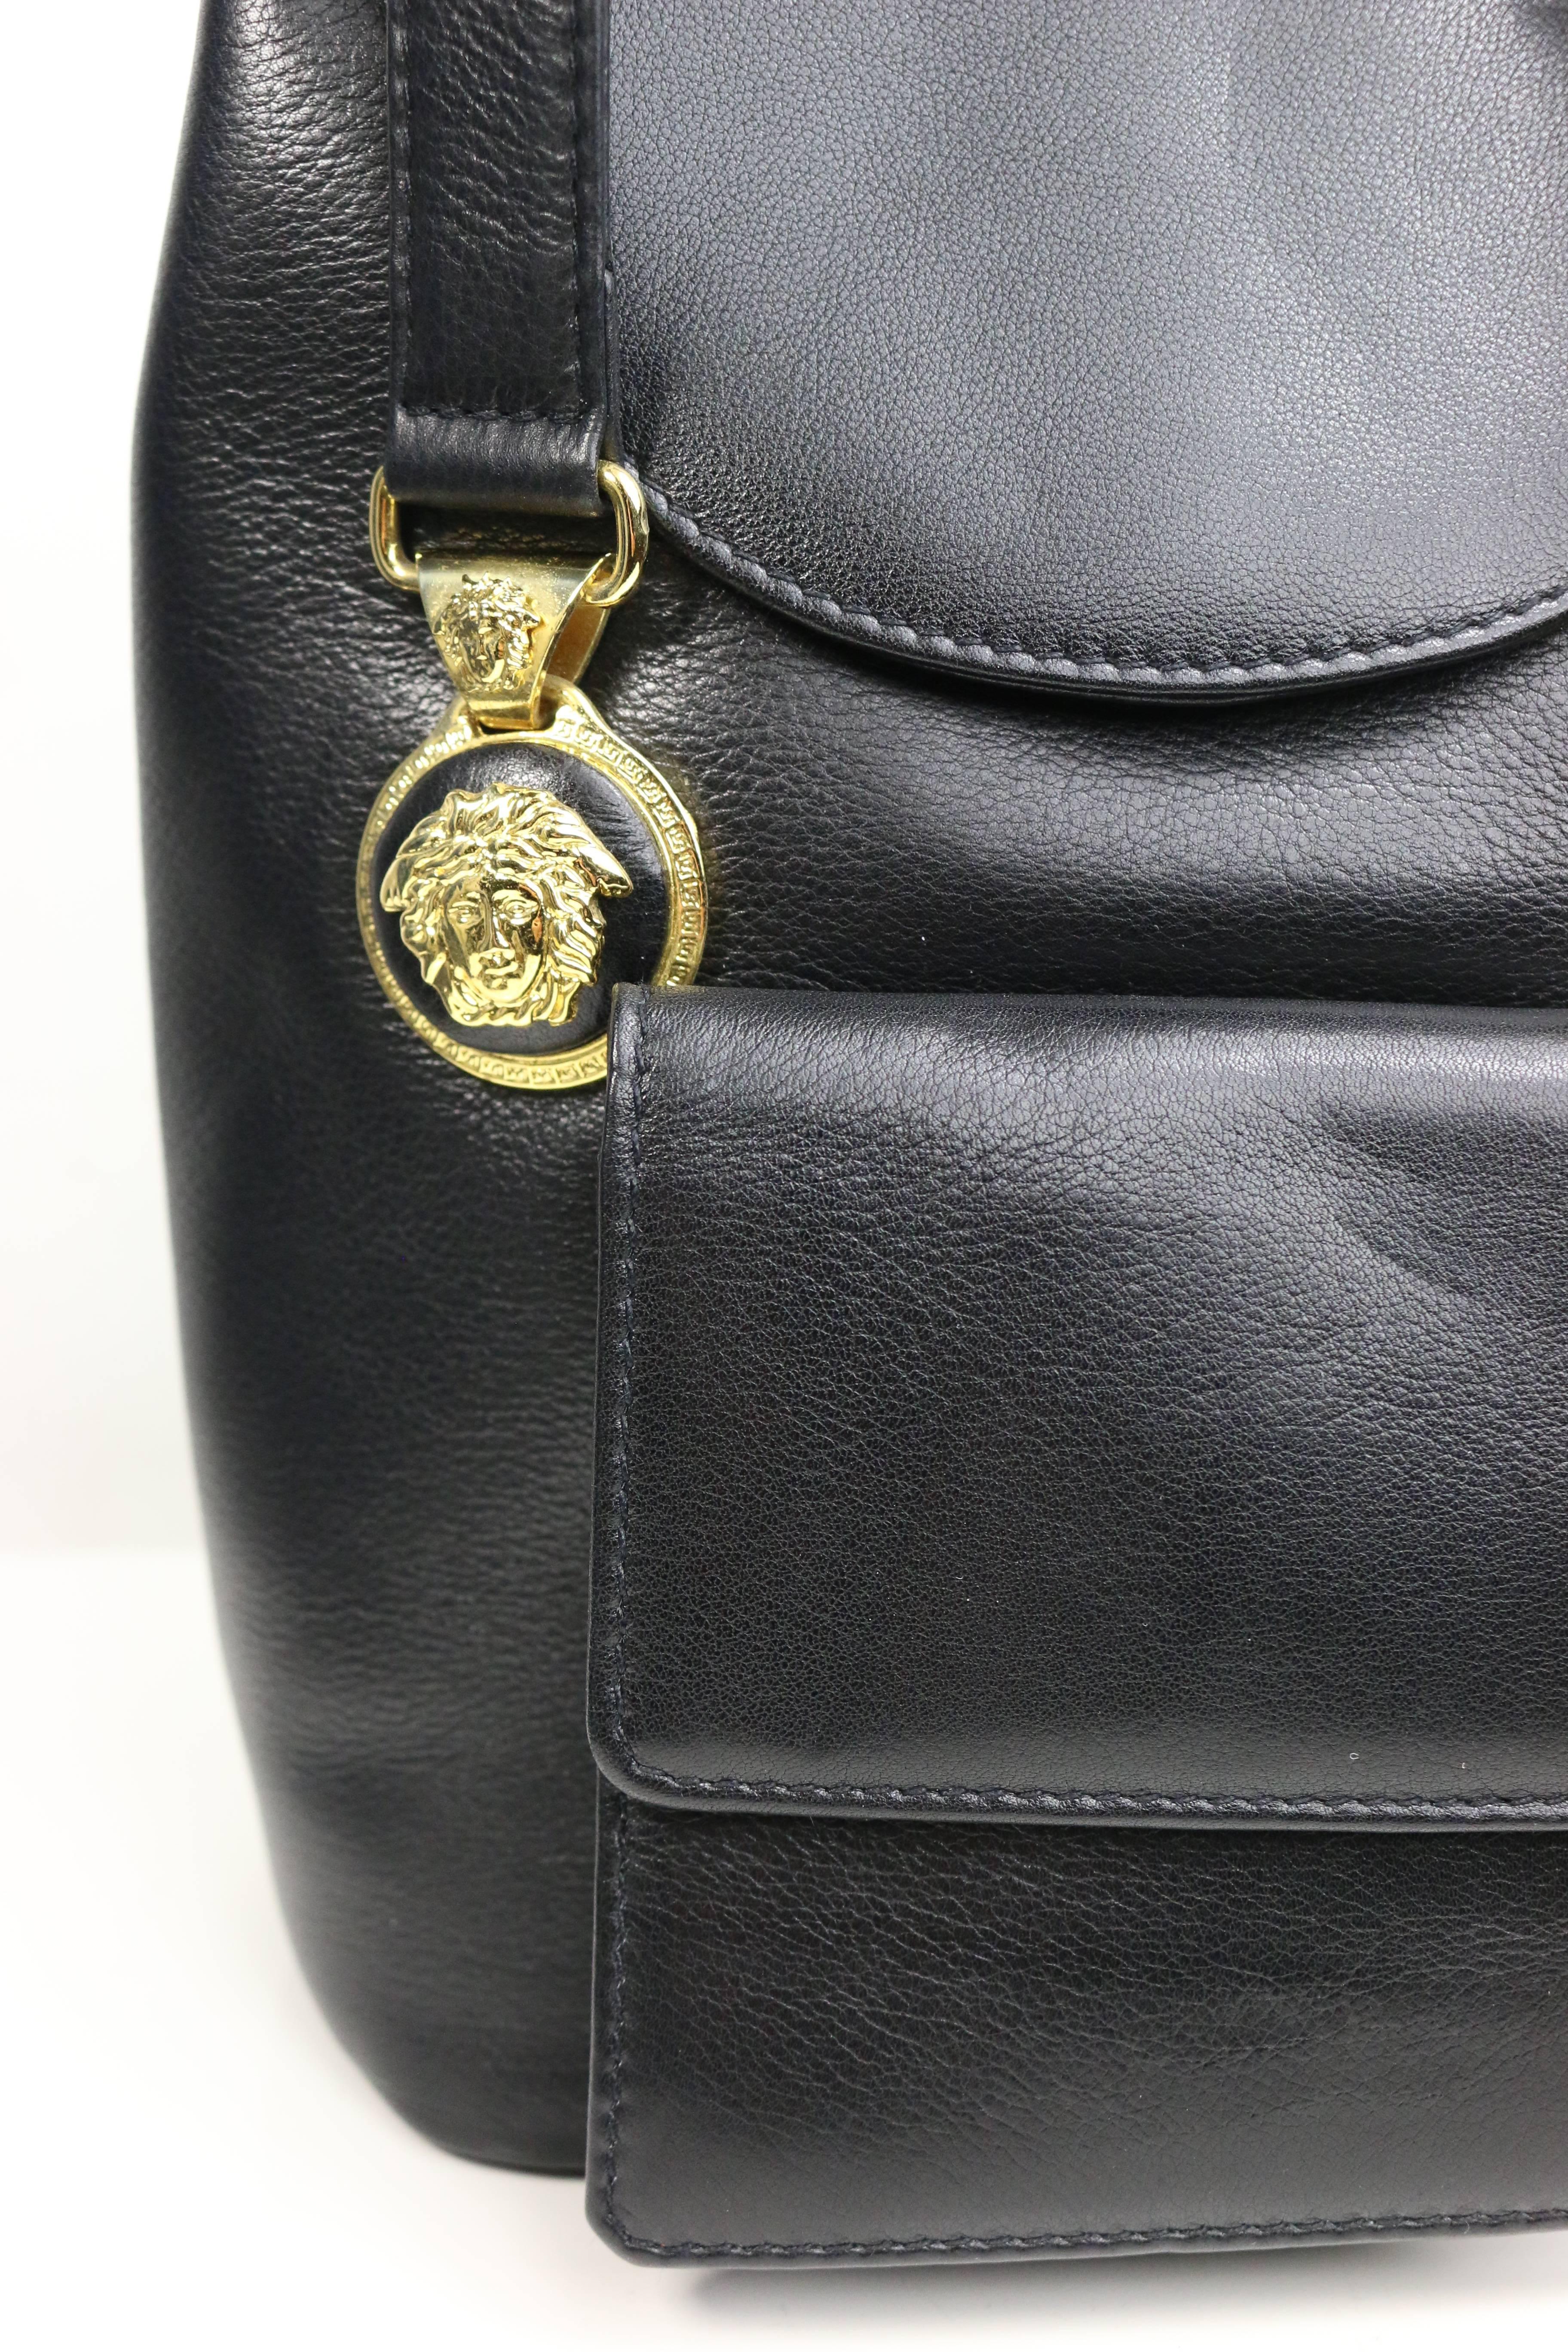 versace black handbag